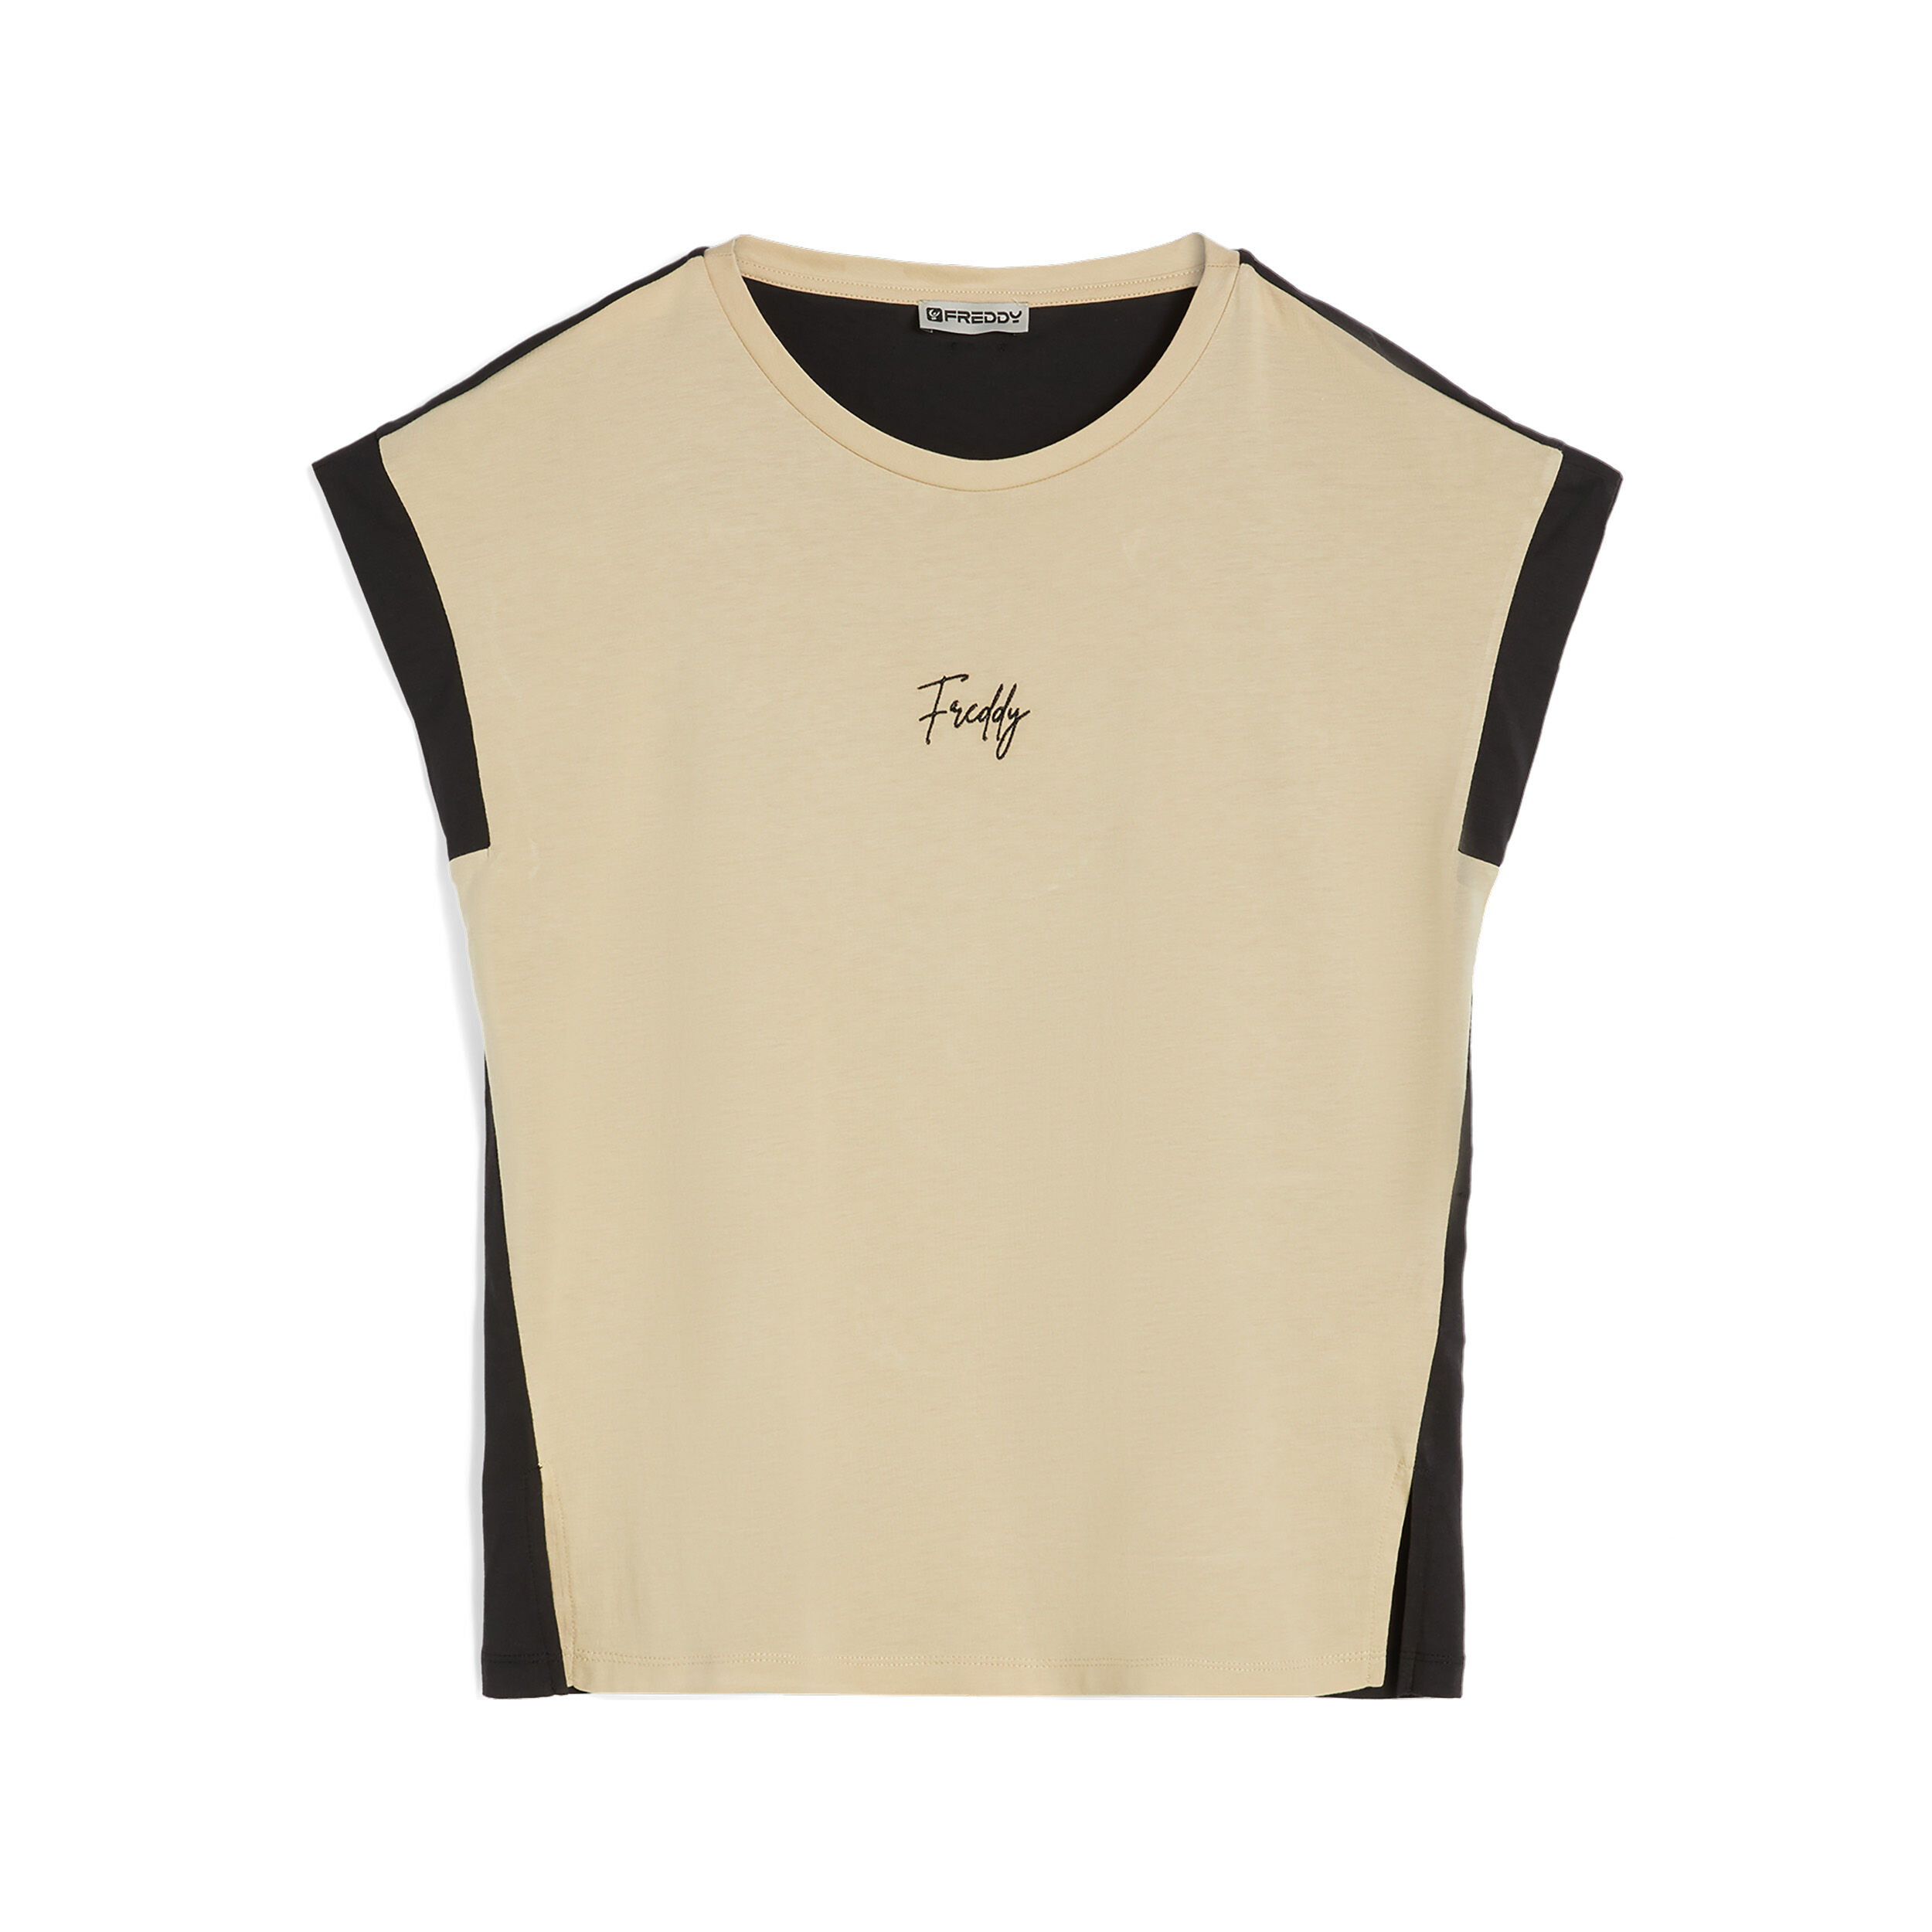 Freddy T-shirt da donna senza maniche in jersey modal bicolore Check Beige -Black Donna Large